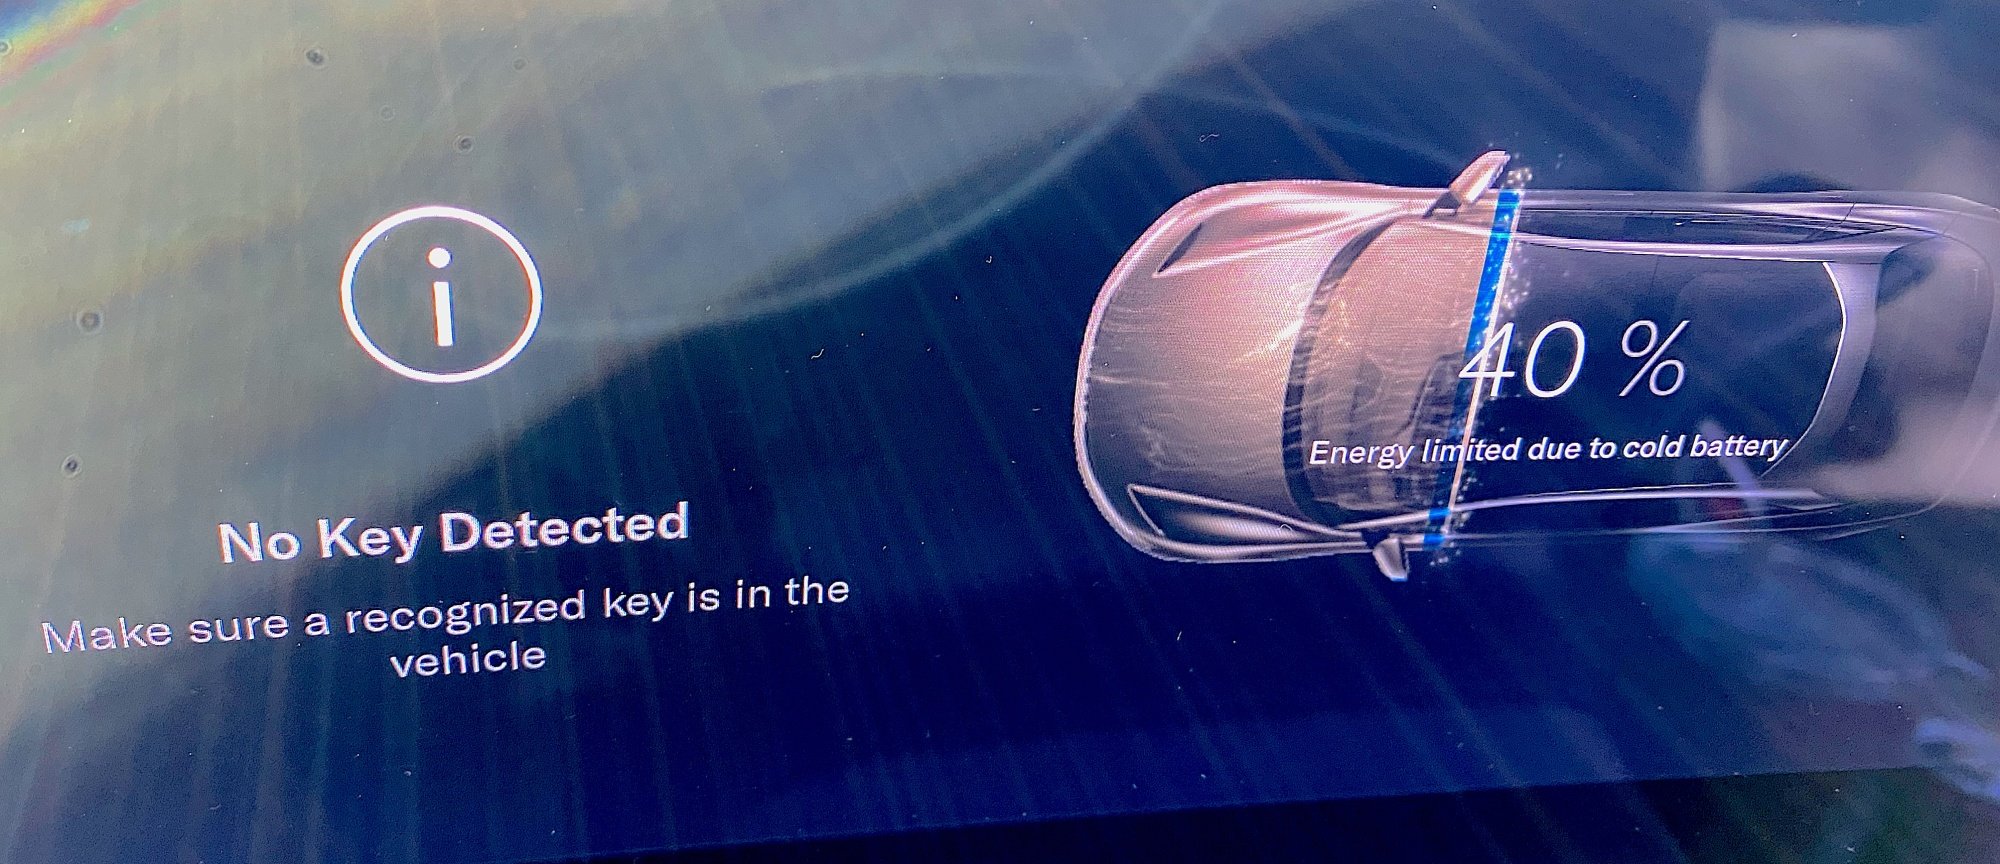 Mesajları ve arabanın bir diyagramını gösteren Lucid Air ekranı. 